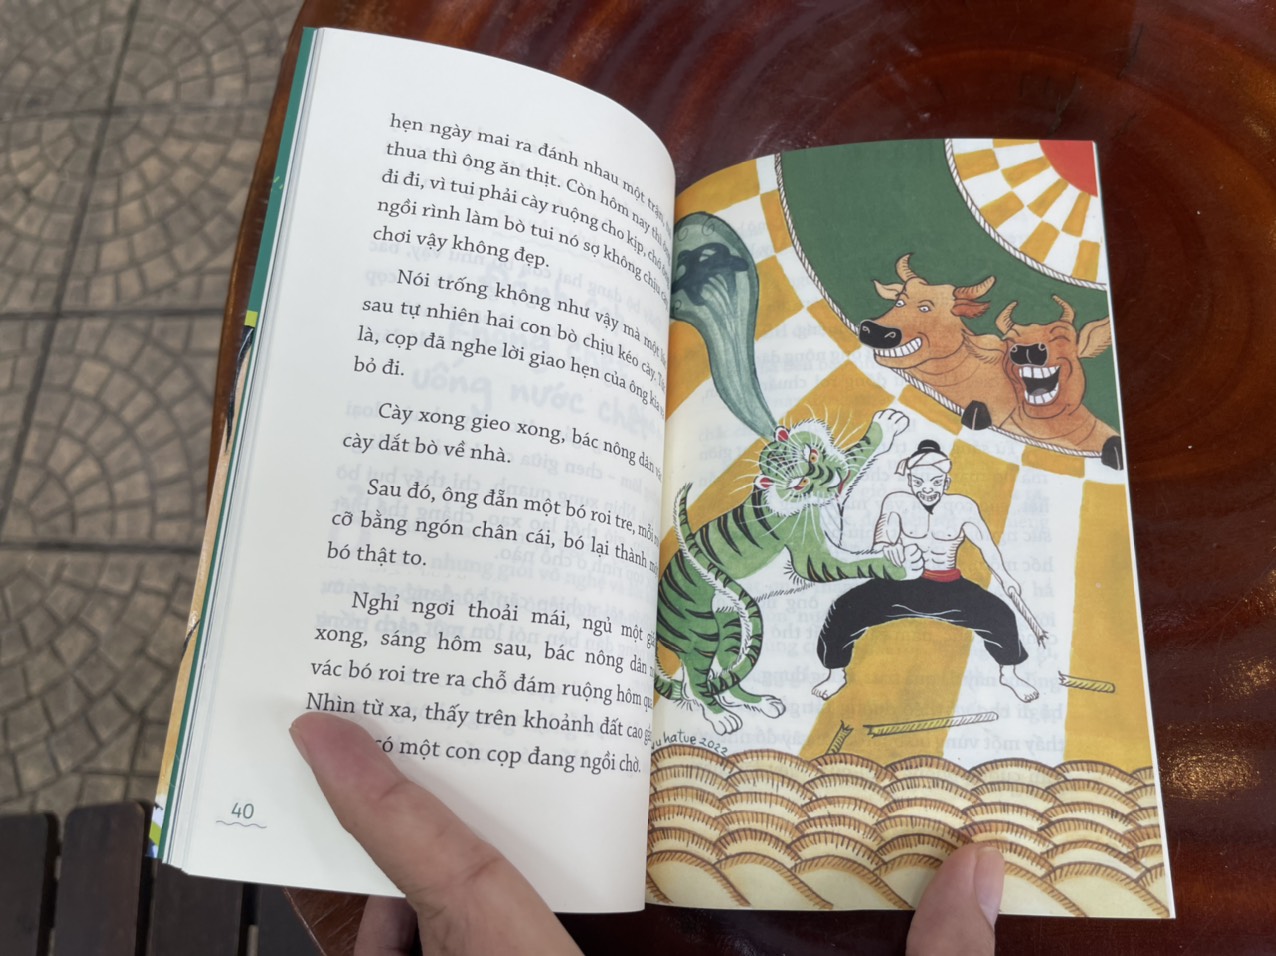 (Tranh minh hoạ màu) NHỮNG TRUYỆN KỲ THÚ VỀ CỌP CHƯA AI KỂ - Nguyễn Lam Điền – Vũ Hà Tuệ minh hoạ – Nhà xuất bản Trẻ (sách mới 2022) (bìa mềm)